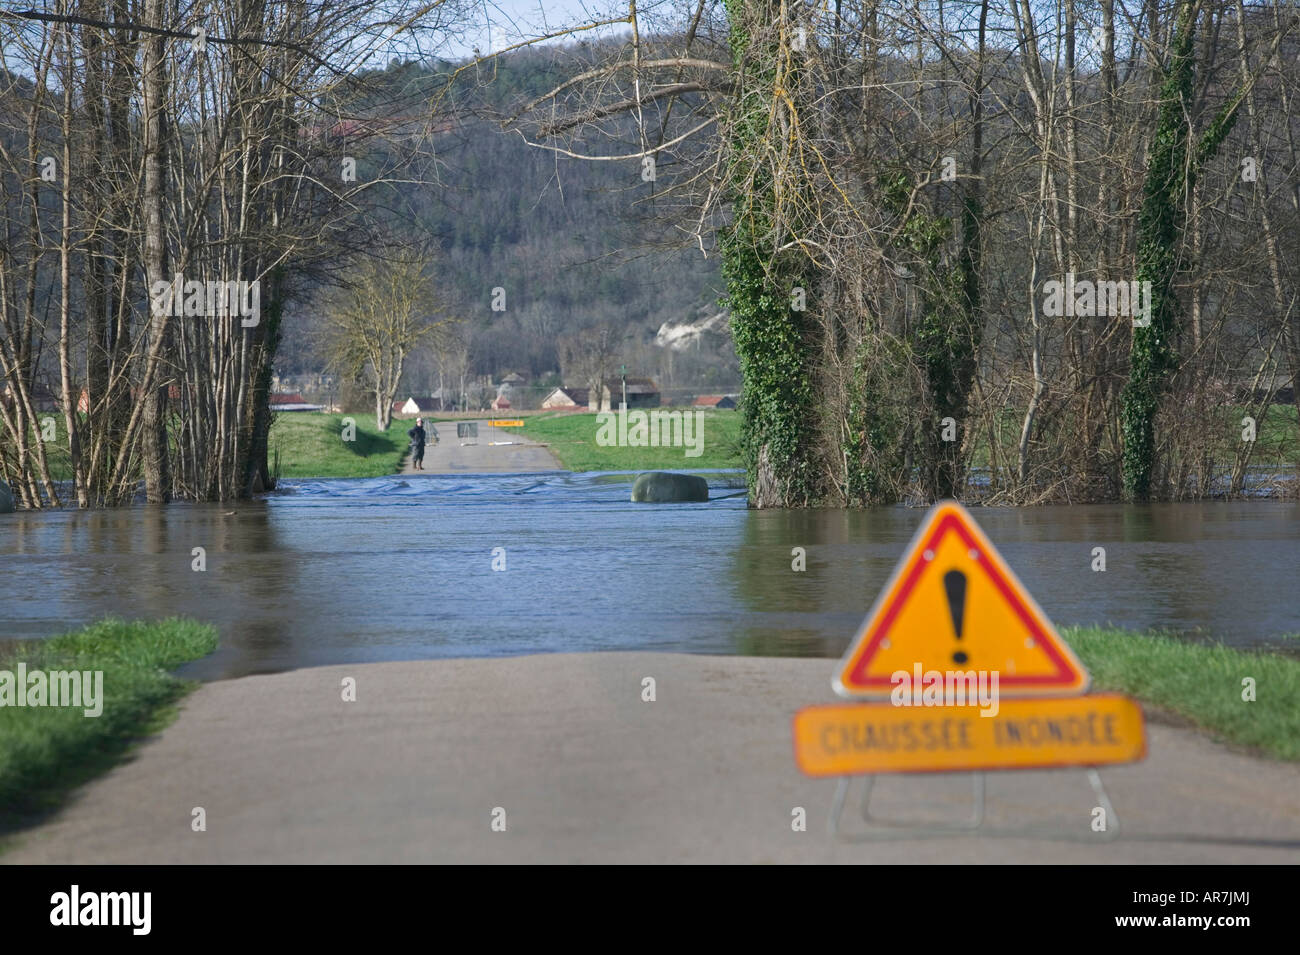 Rivière Dordogne déborde de ses banques à la suite de pluies sévères et prend un nouveau cours, bloquer une route dans le processus. Banque D'Images